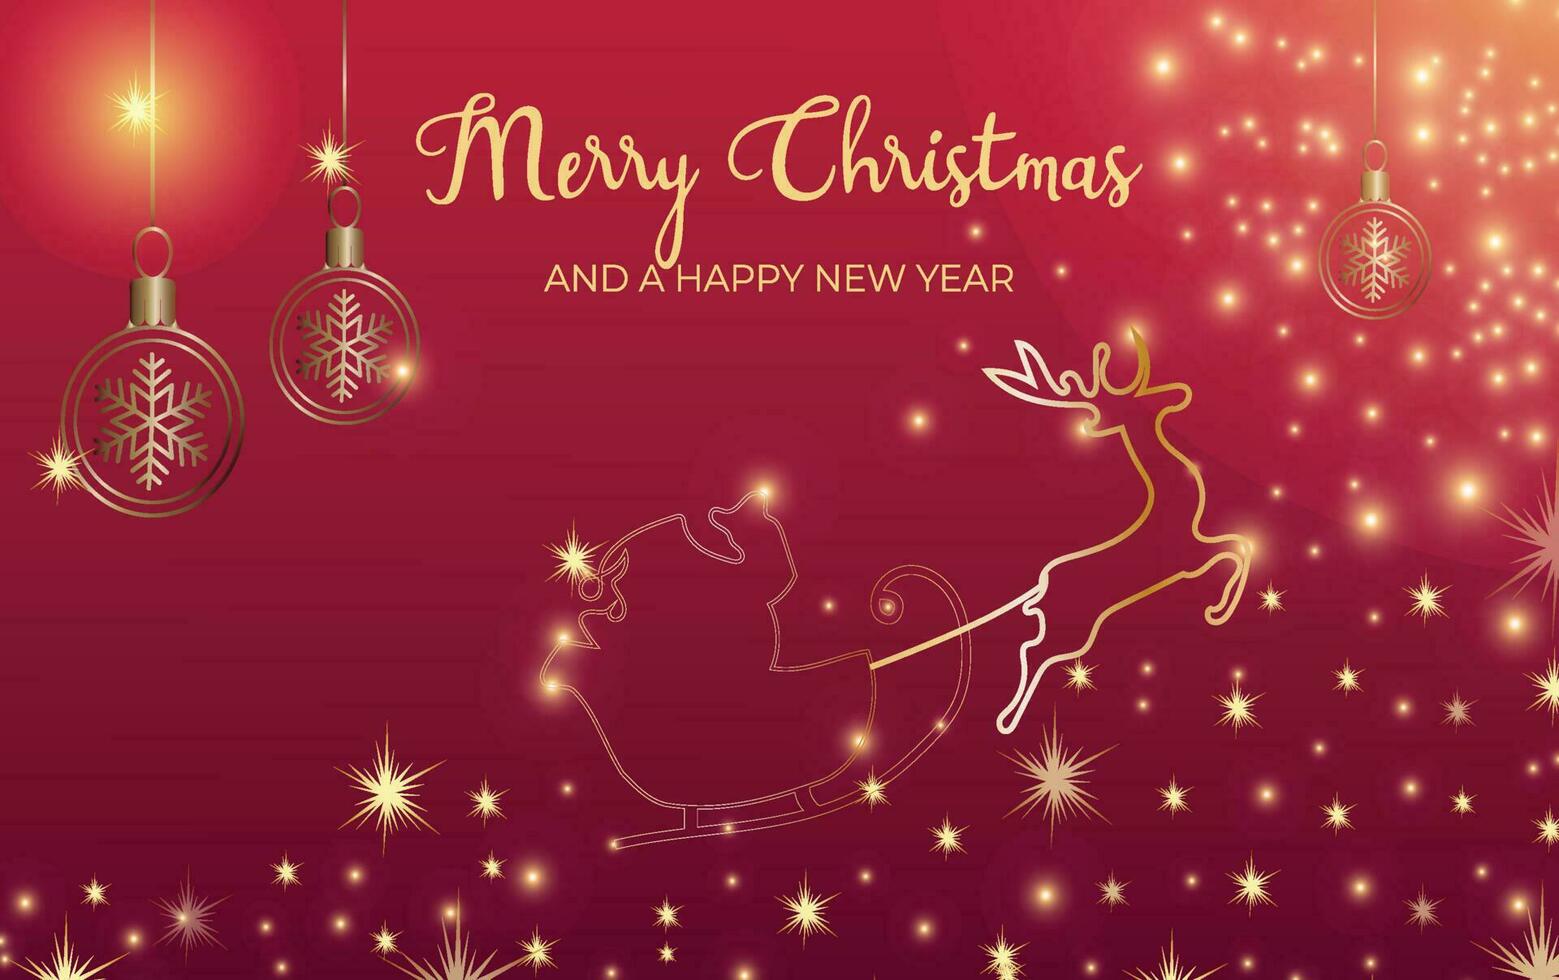 merry christmas achtergrond santa met rendieren kaart, banner, uitnodiging, groet vector illustratie sjabloon